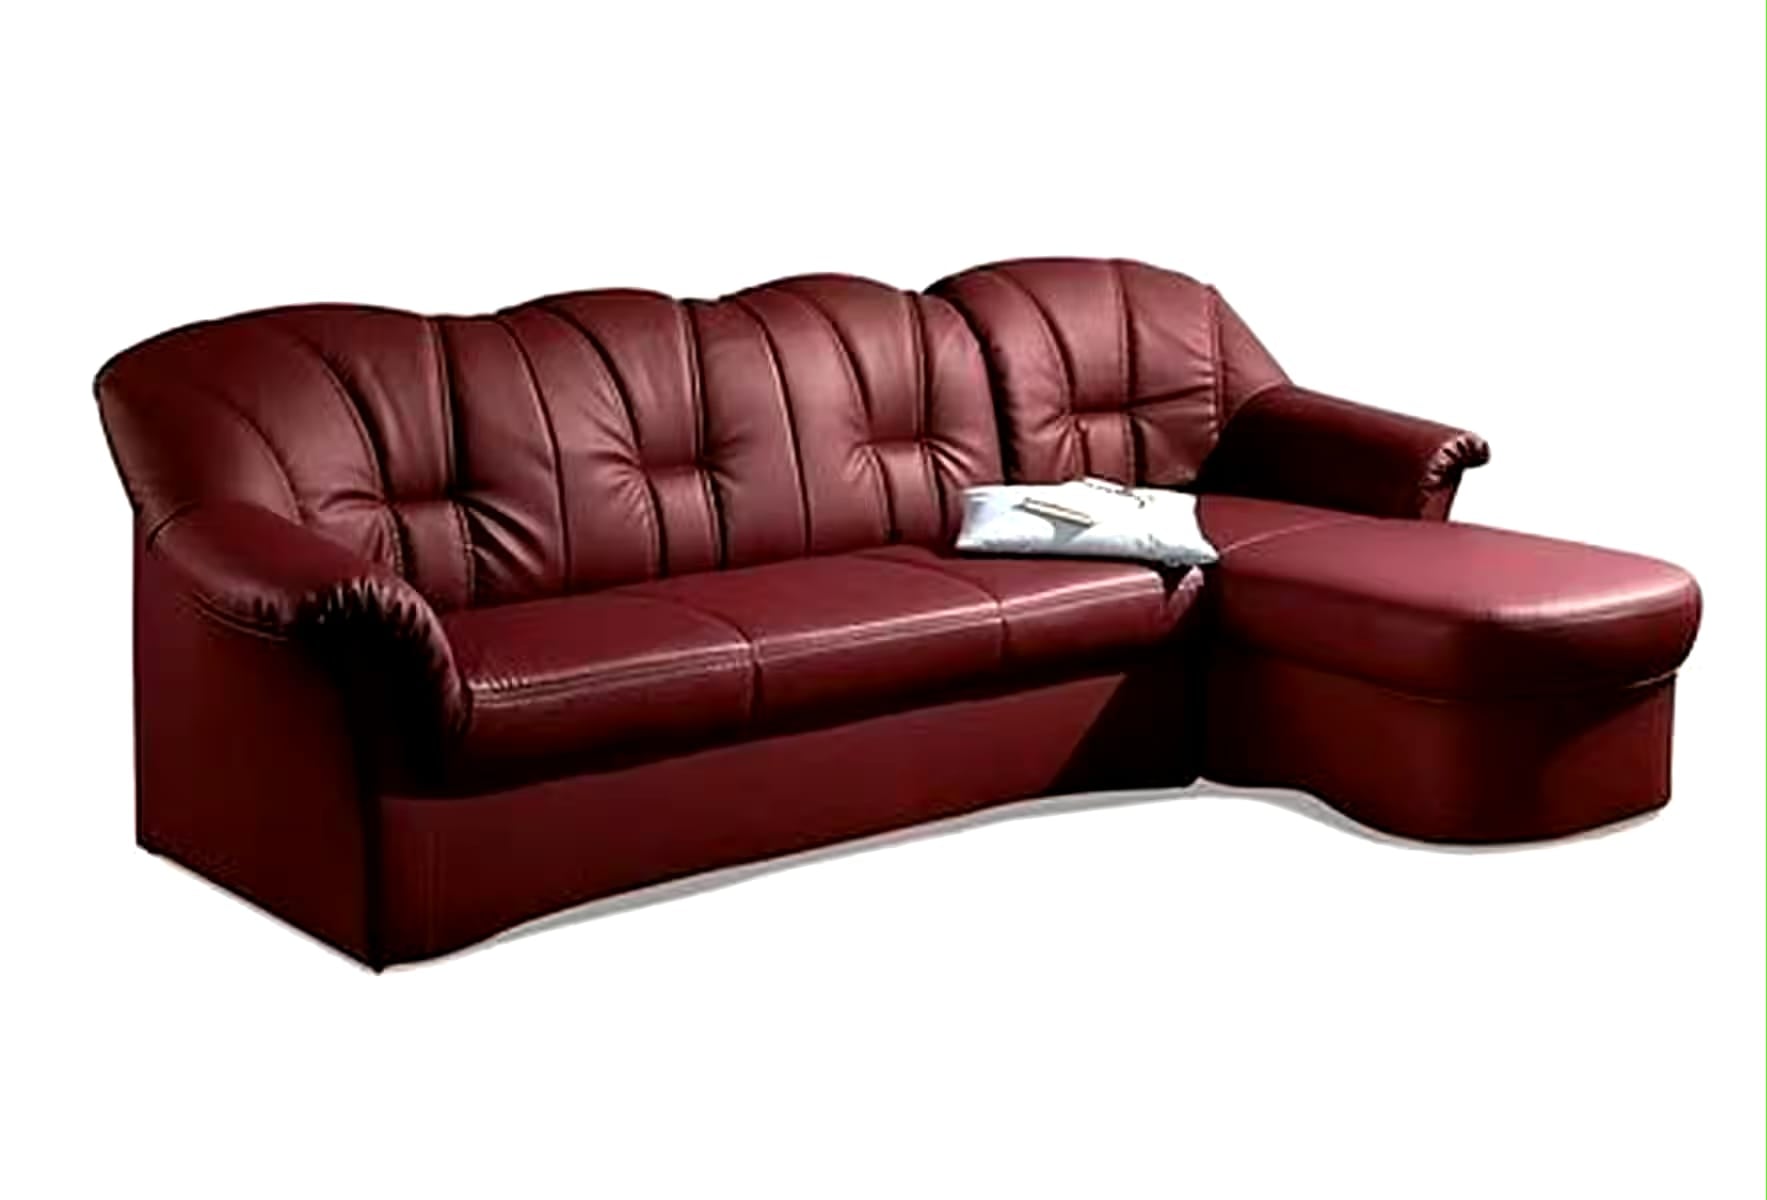 Sofa+sillon - Paprnburgo N.º de artículo 7214336567